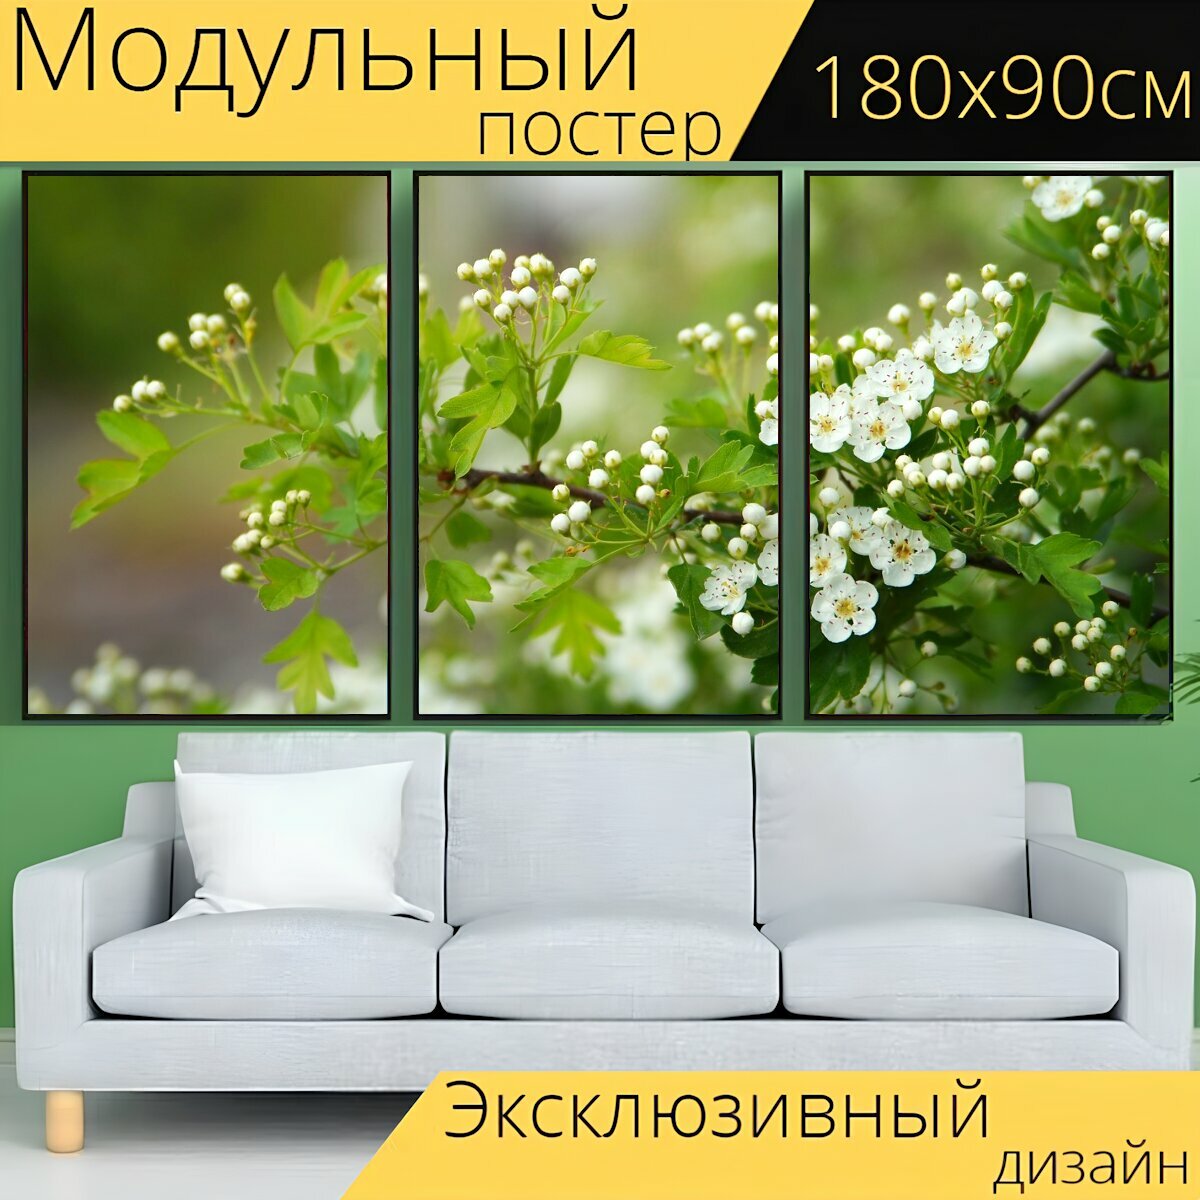 Модульный постер "Природа, завод, цветок" 180 x 90 см. для интерьера